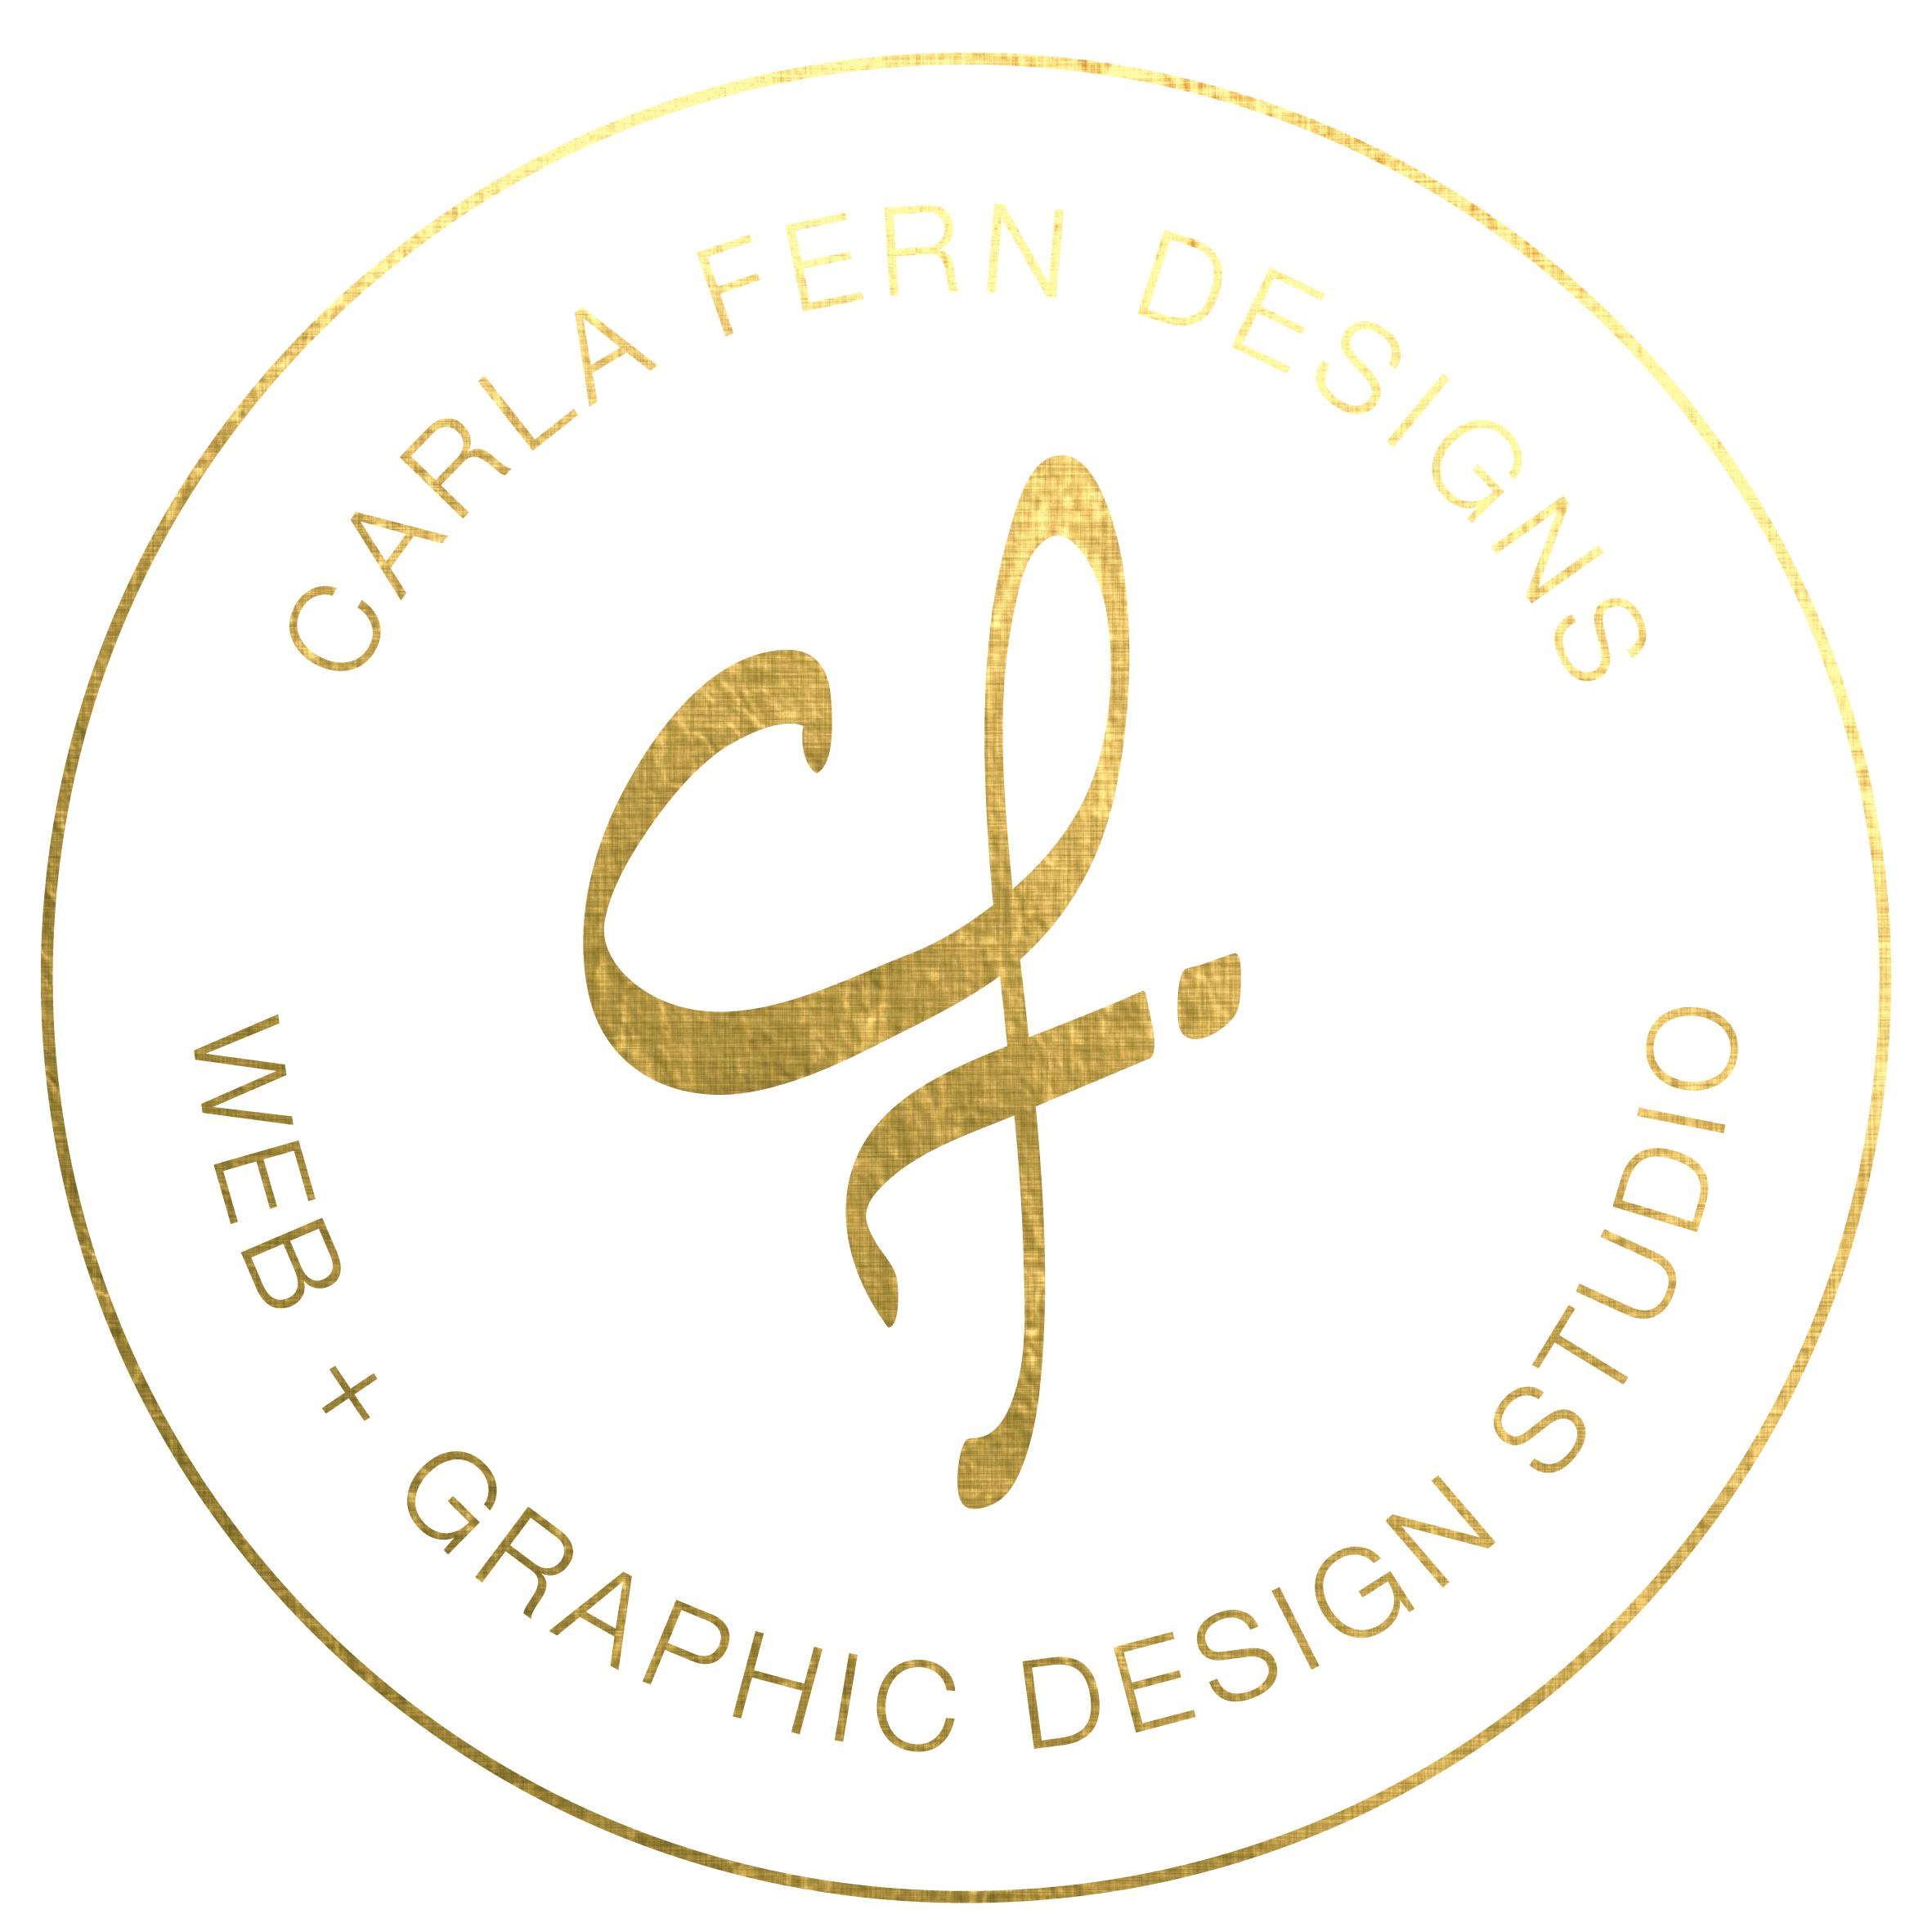 Carla Logo - Carla Fern Designs - Web and Graphic Design Studio